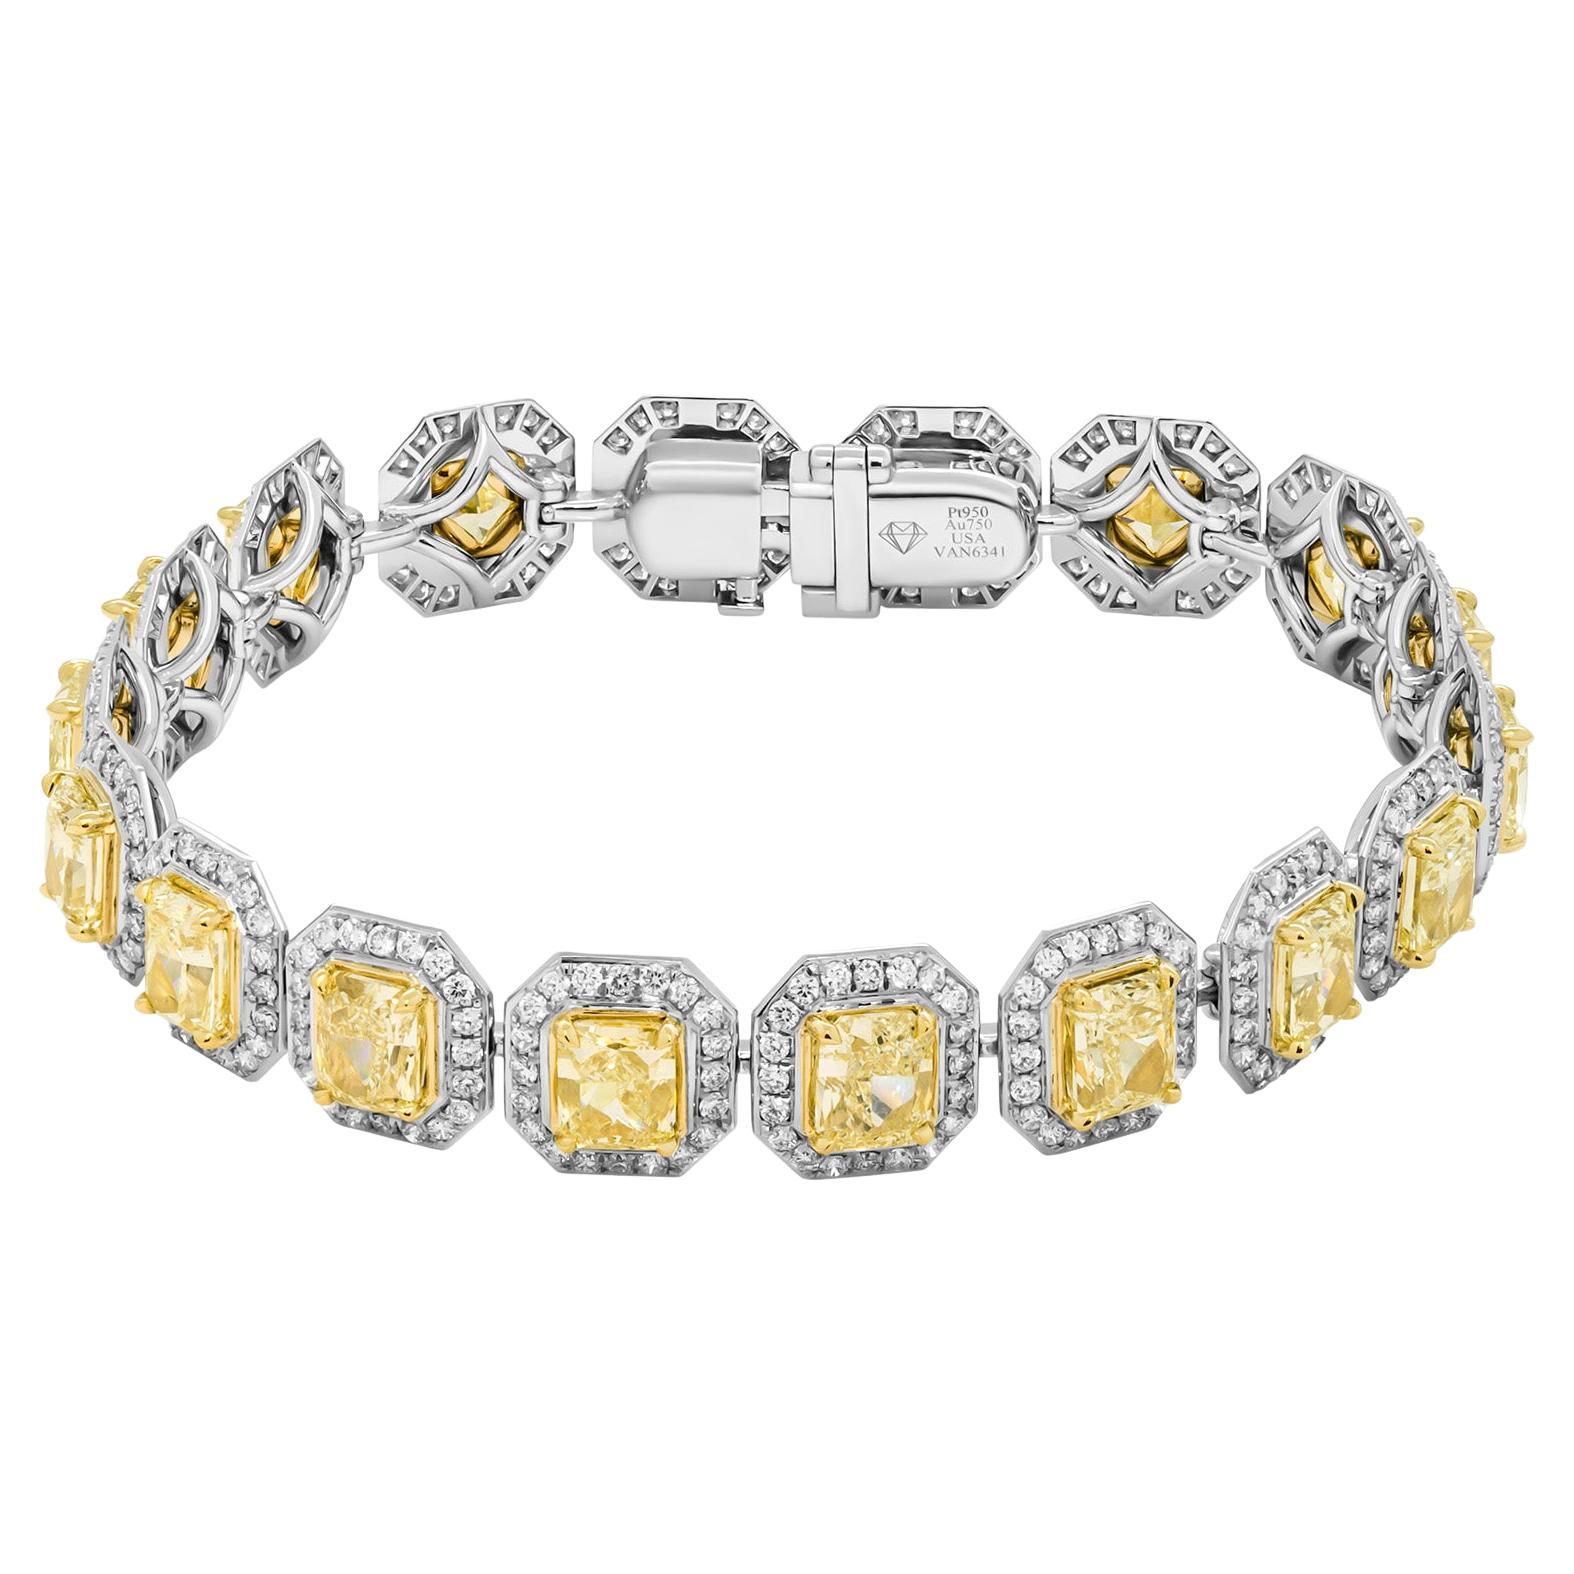 Bracelet tennis certifié GIA avec diamants jaunes taille radiant